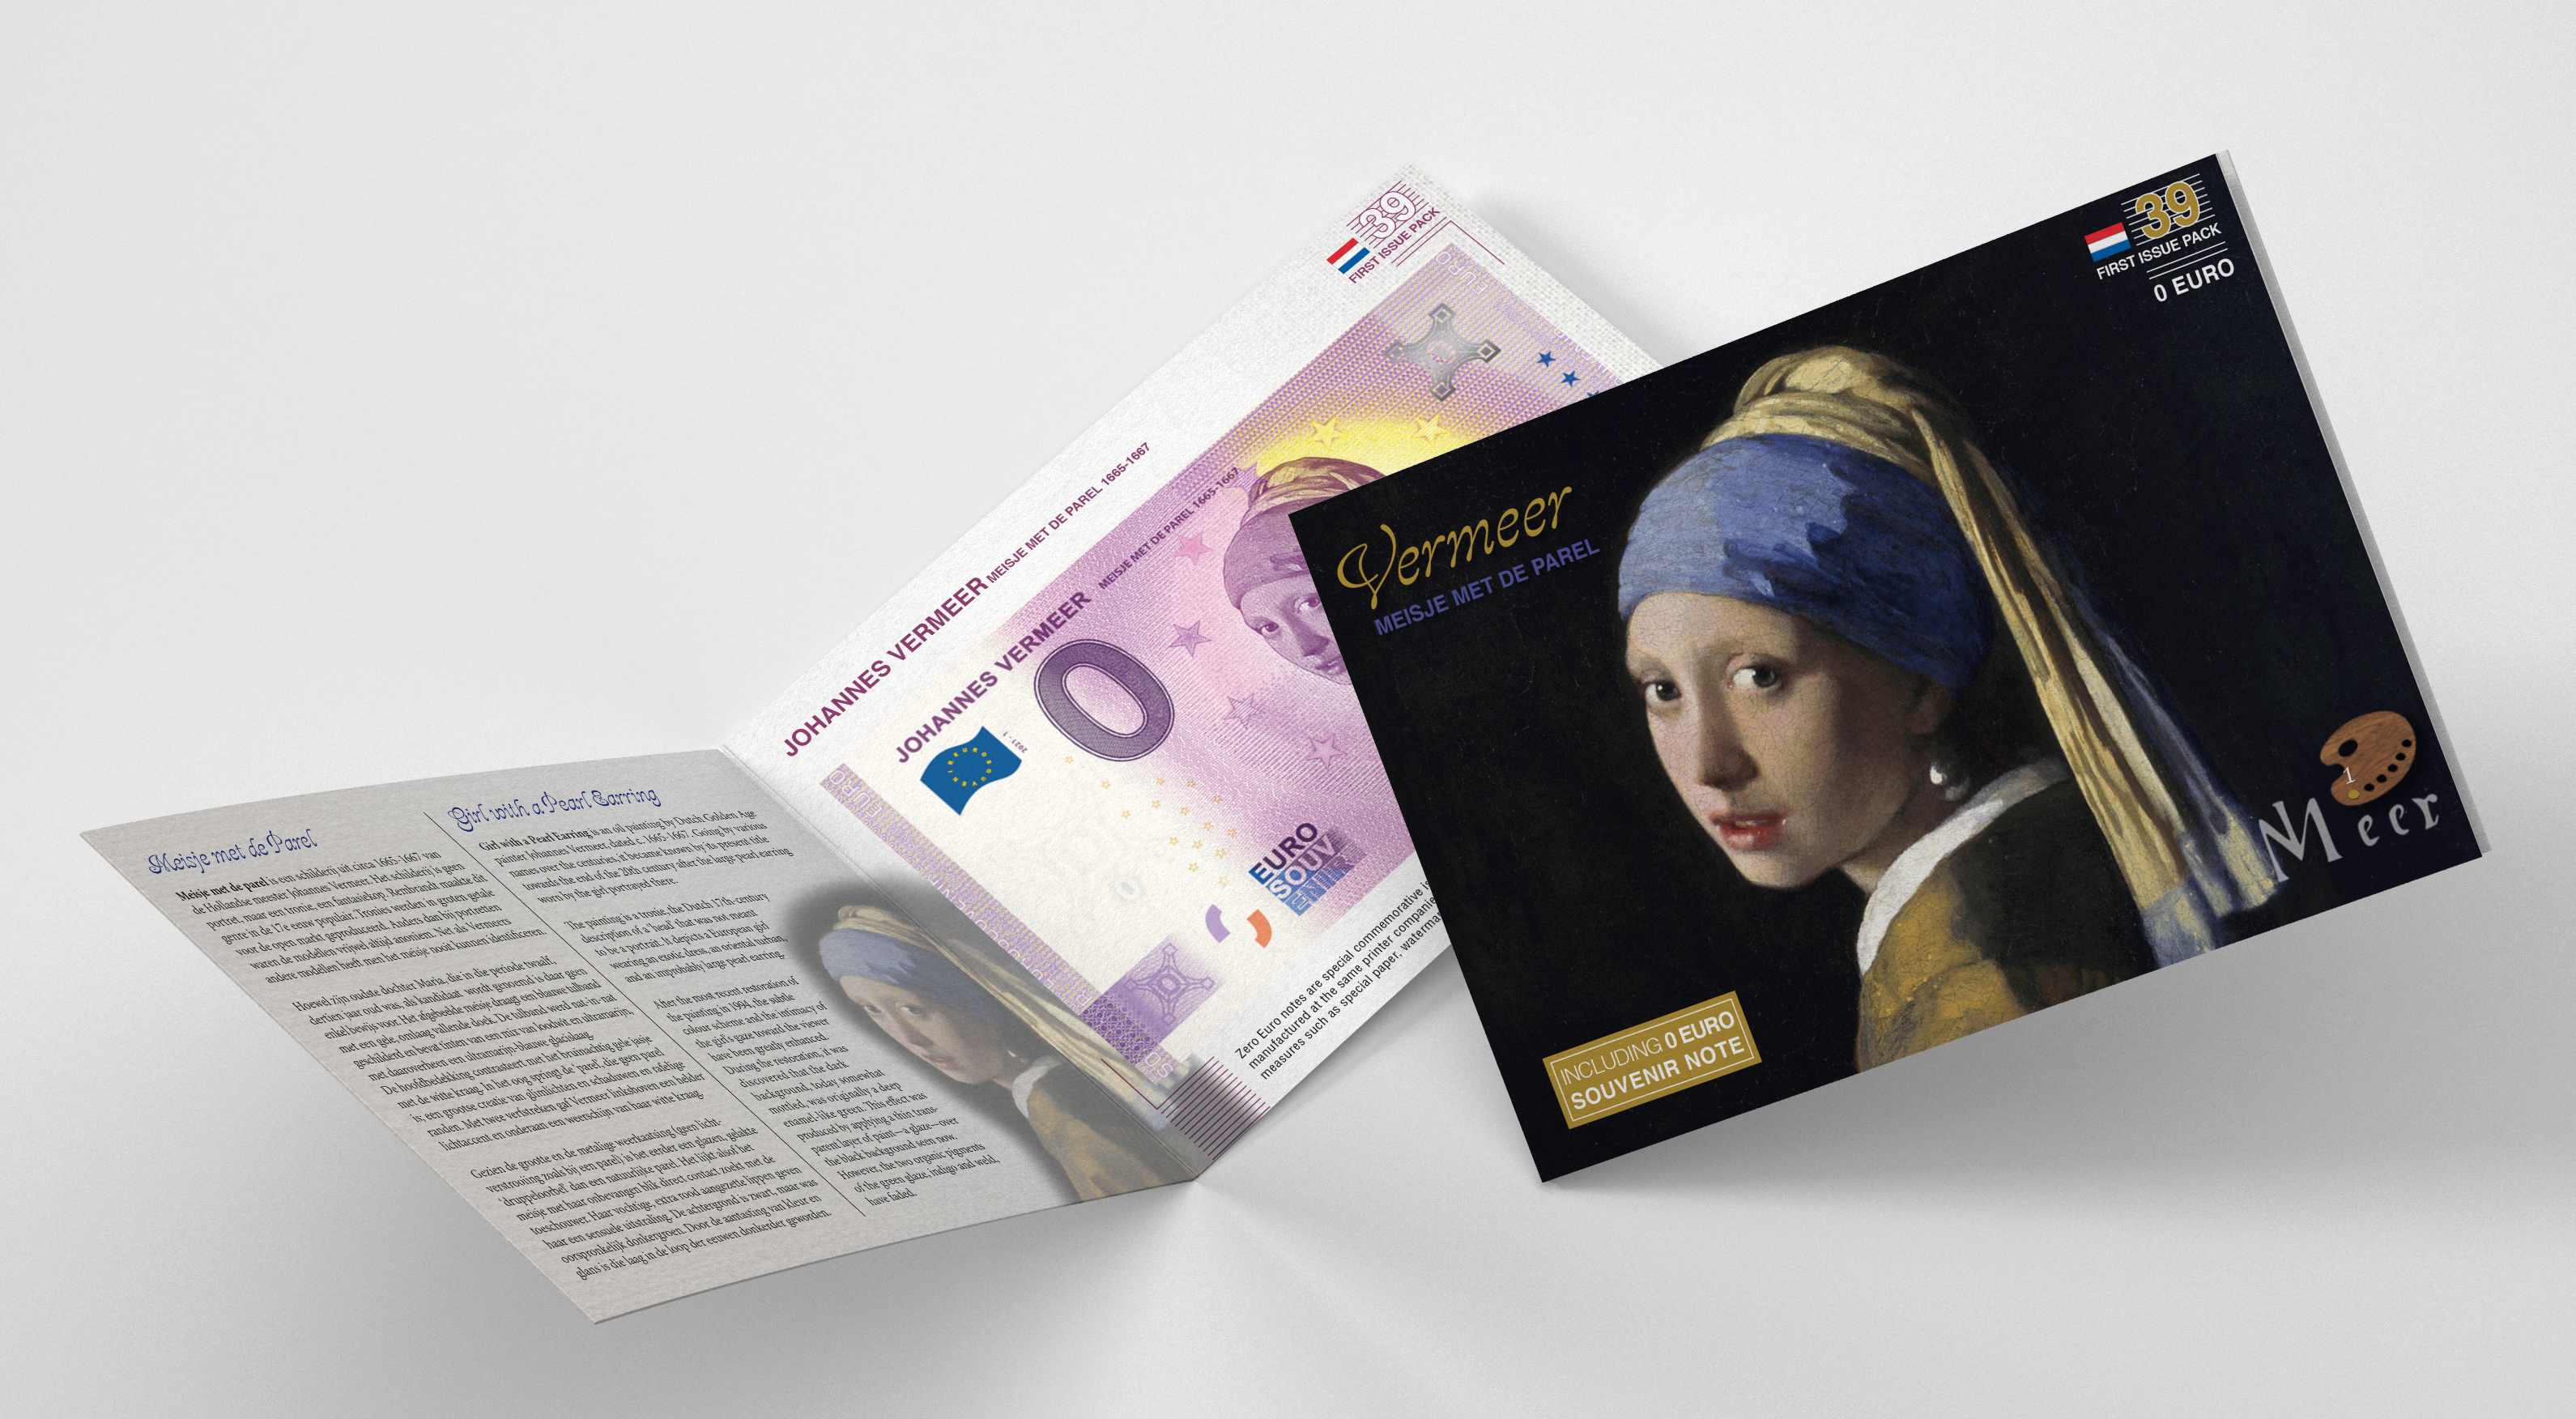 0 Euro biljet Nederland 2021 - Vermeer Meisje met de Parel LIMITED EDITION FIP#39